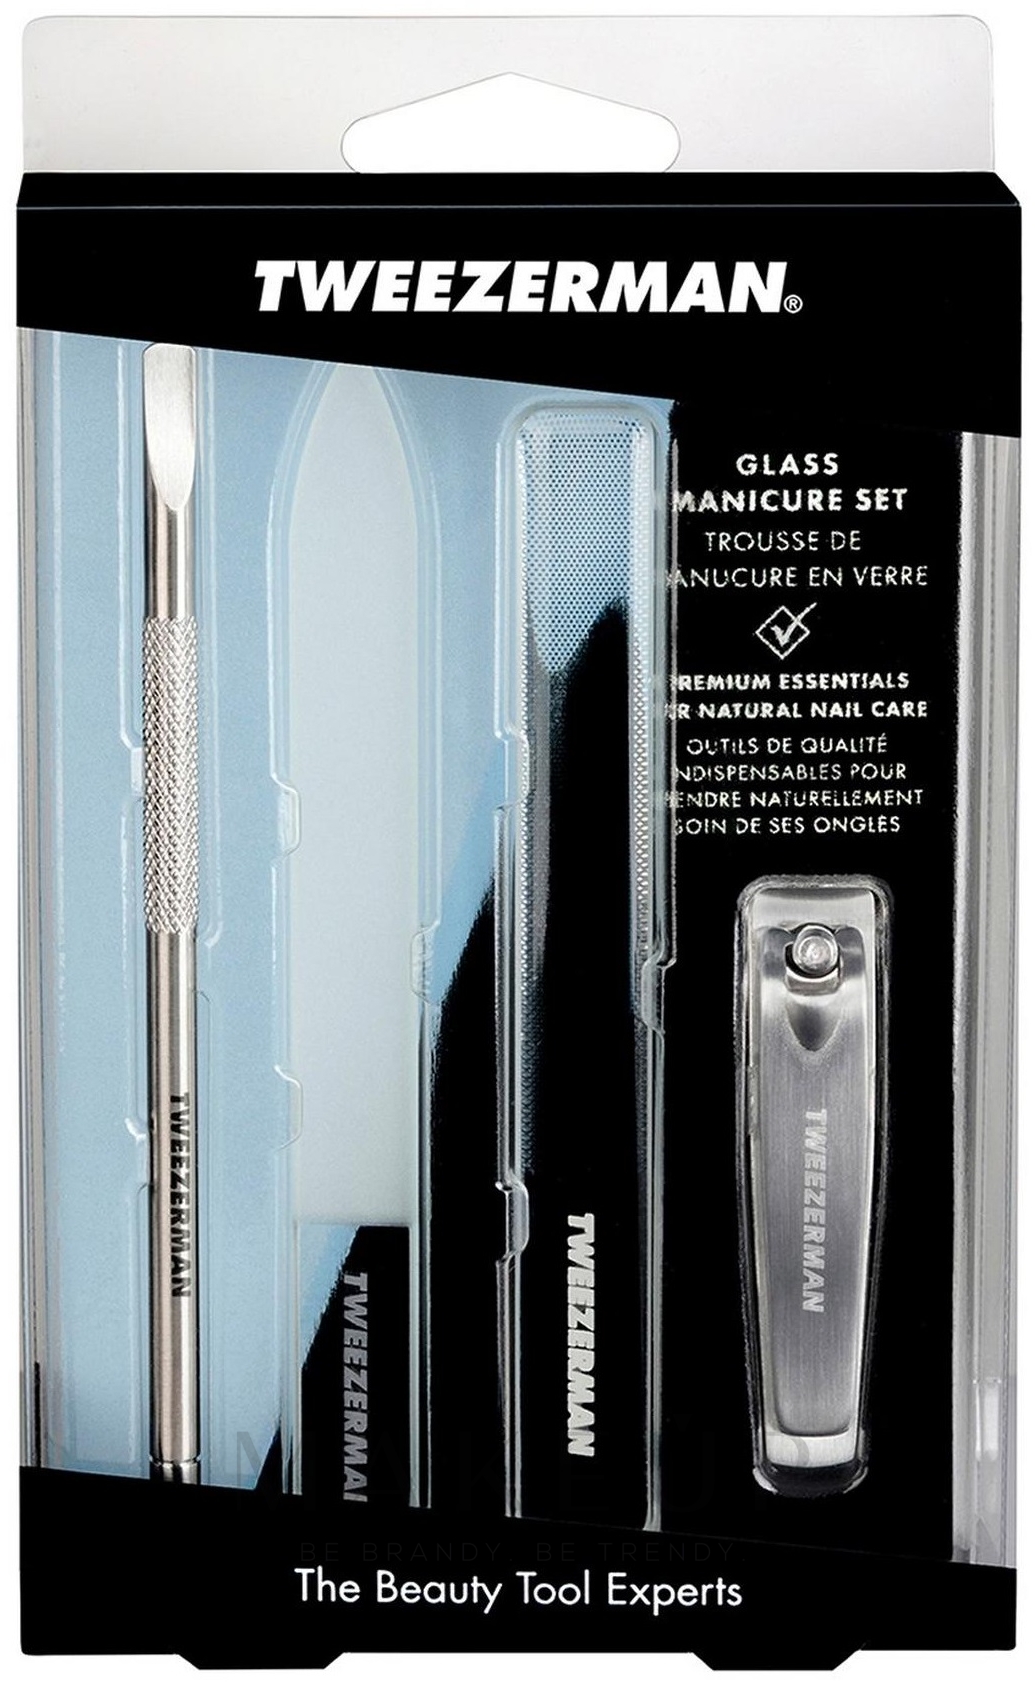 Tweezerman Glass Manicure Set Maniküre-Set 